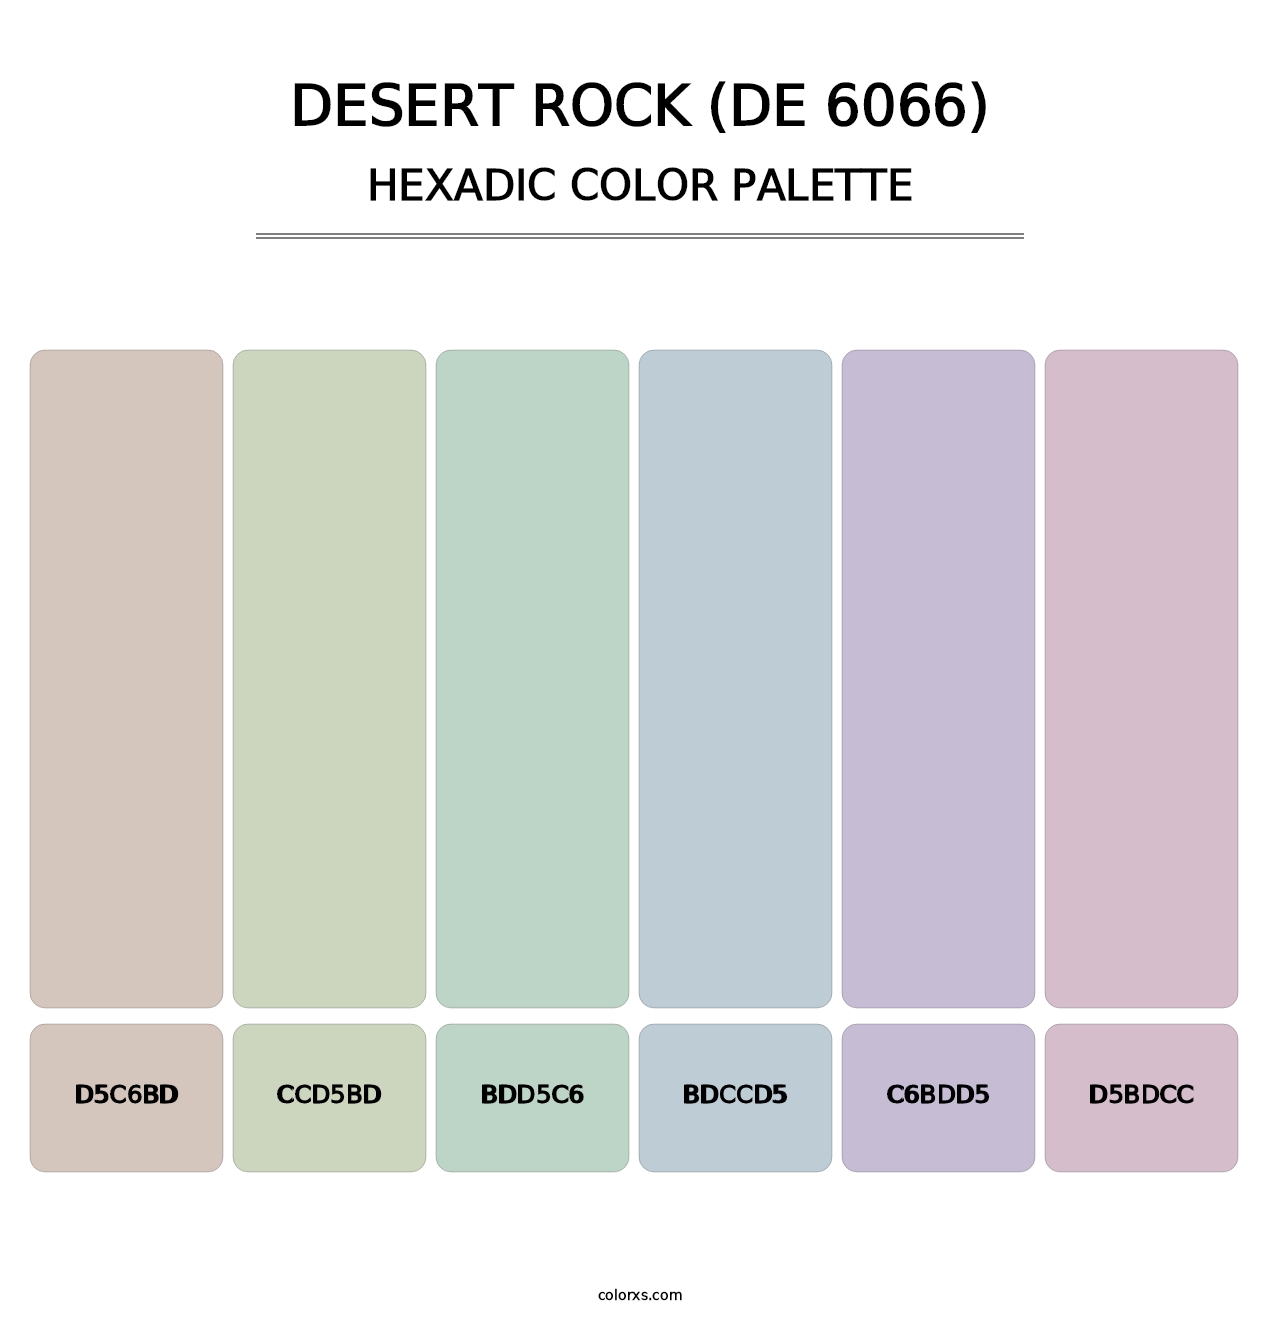 Desert Rock (DE 6066) - Hexadic Color Palette